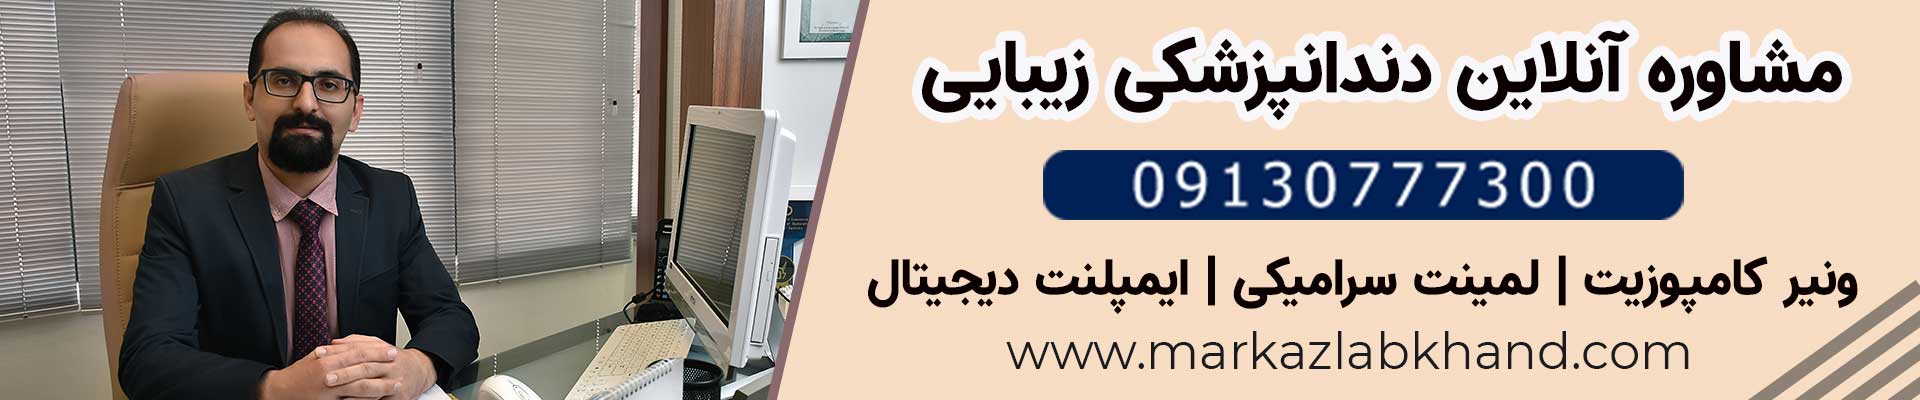 دکتر محمد عاطفت دندانپزشکی ترمیمی، زیبایی و ایمپلنت در اصفهان